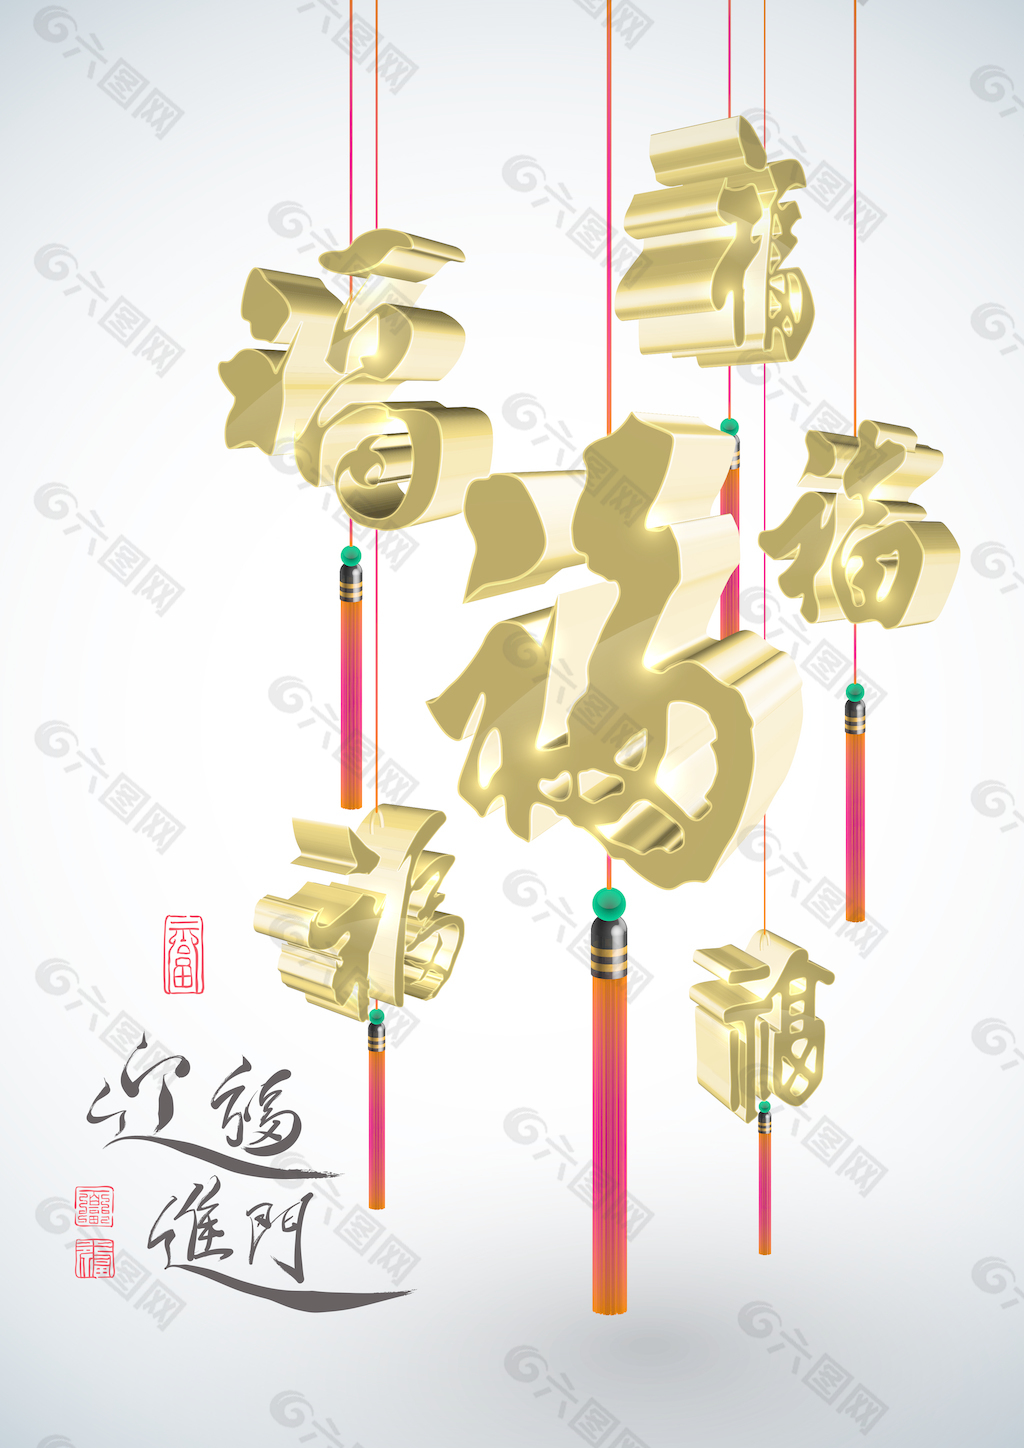 翻译中国的新年问候书法装饰带来好运的家